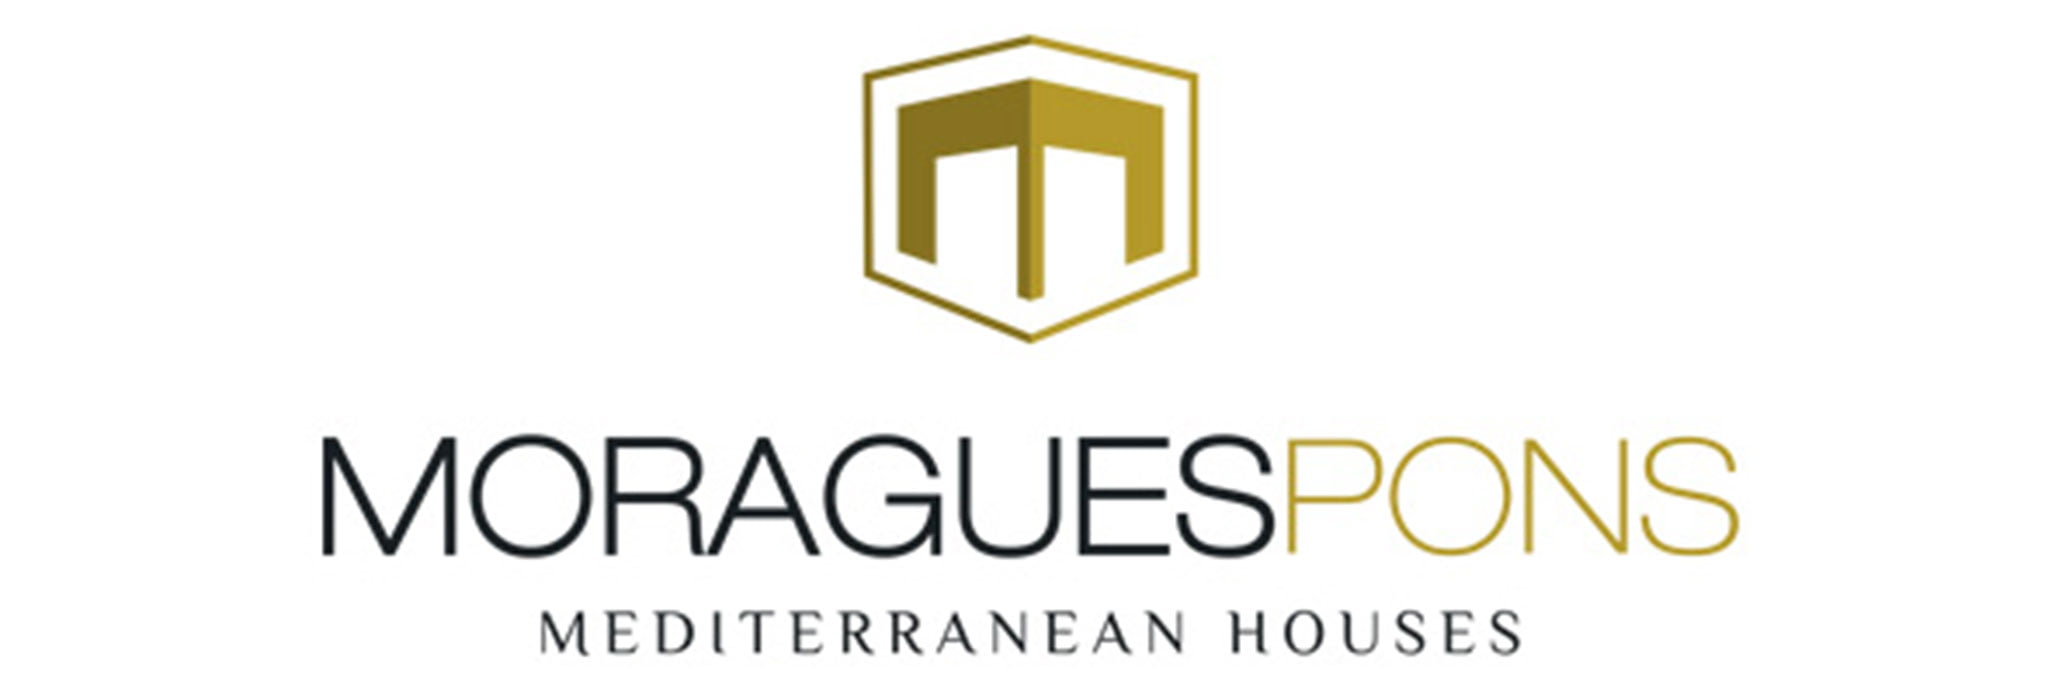 MORAGUESPONS Mediterranean Houses